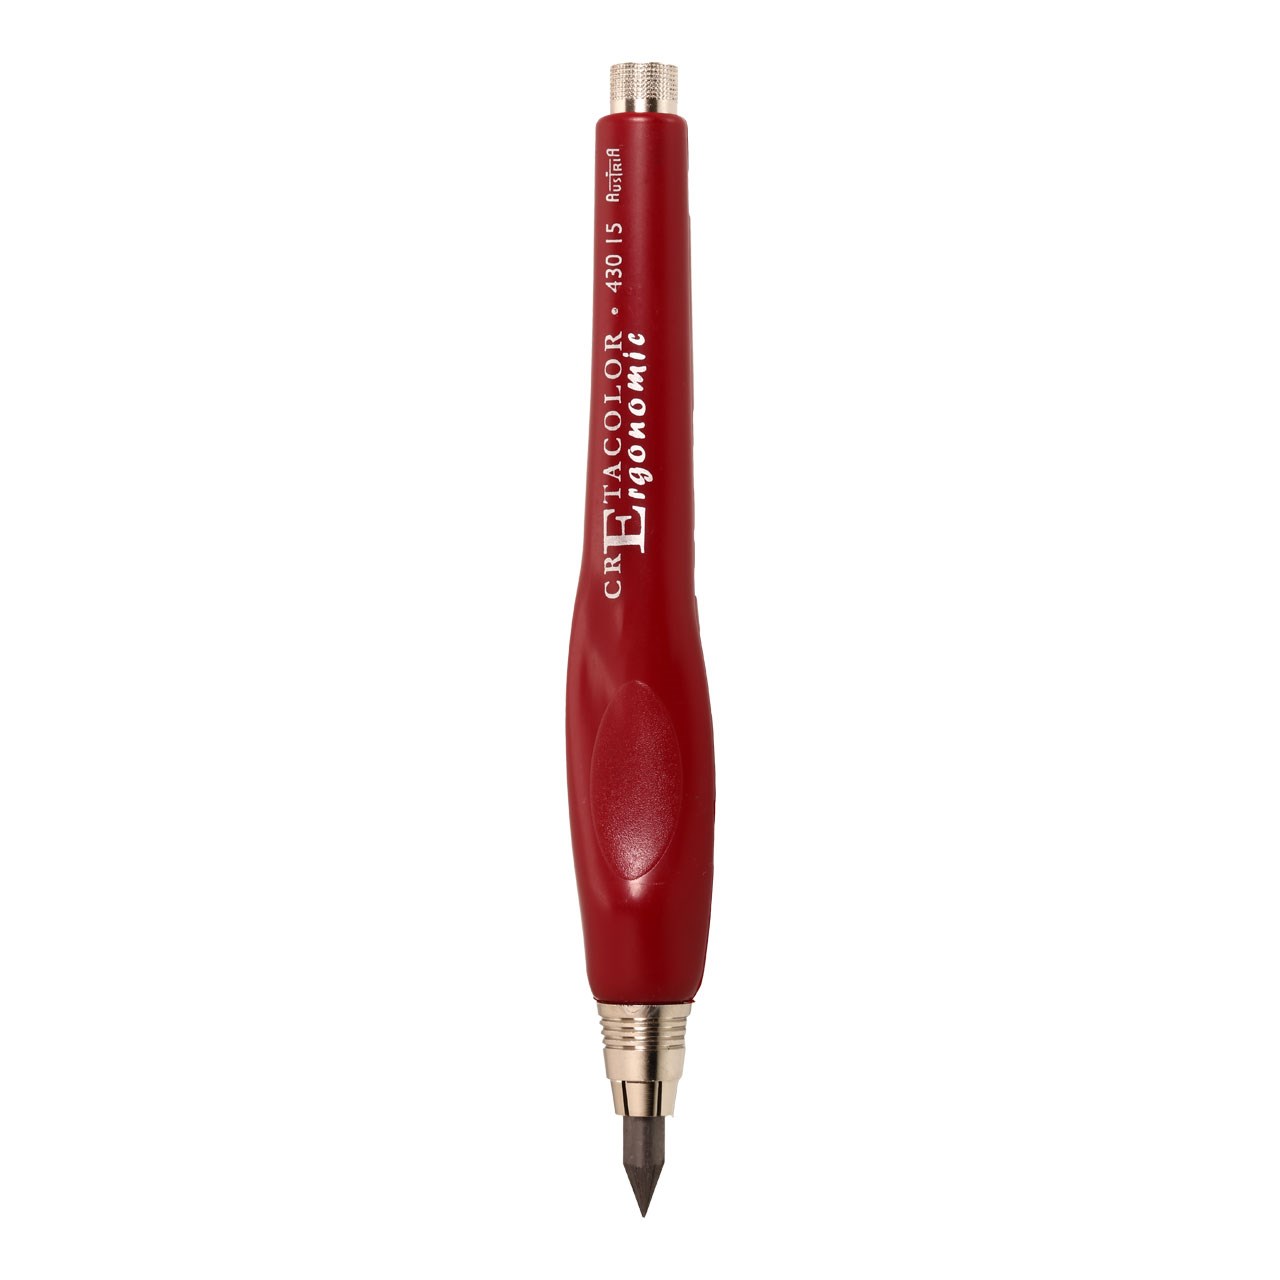 مداد نوکی طراحی کرتاکالر مدل 43015